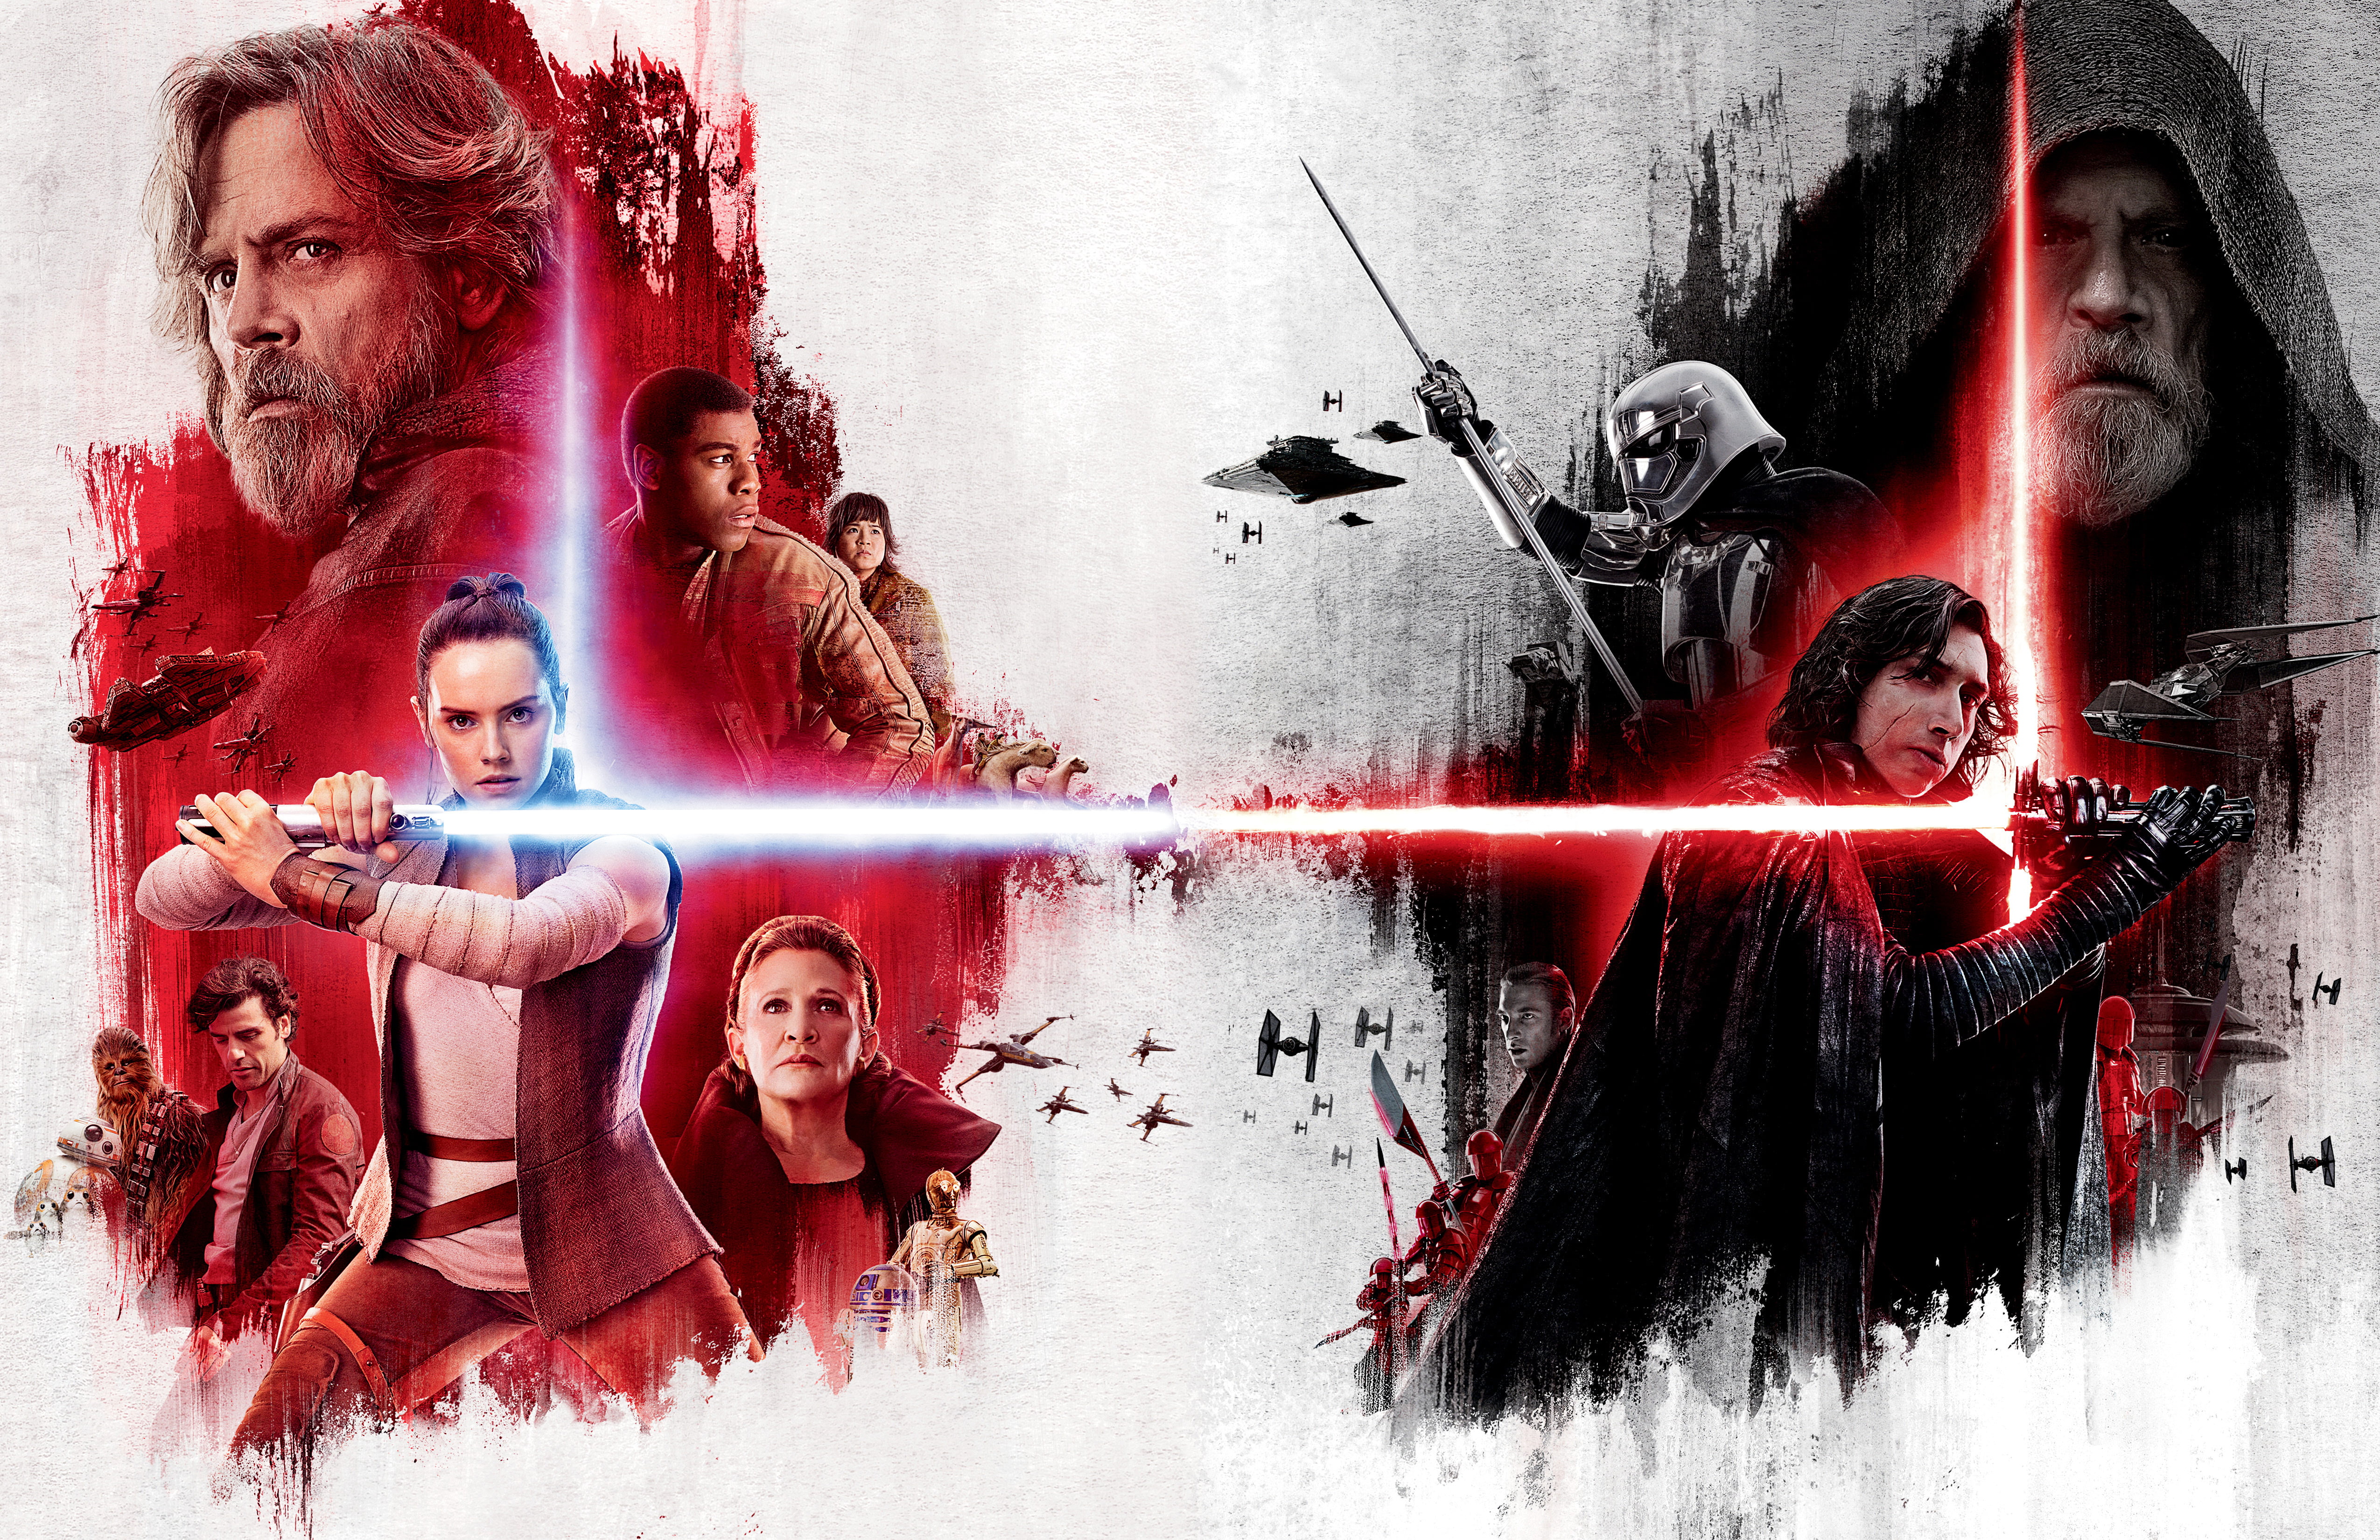 Star Wars the last jedi poster